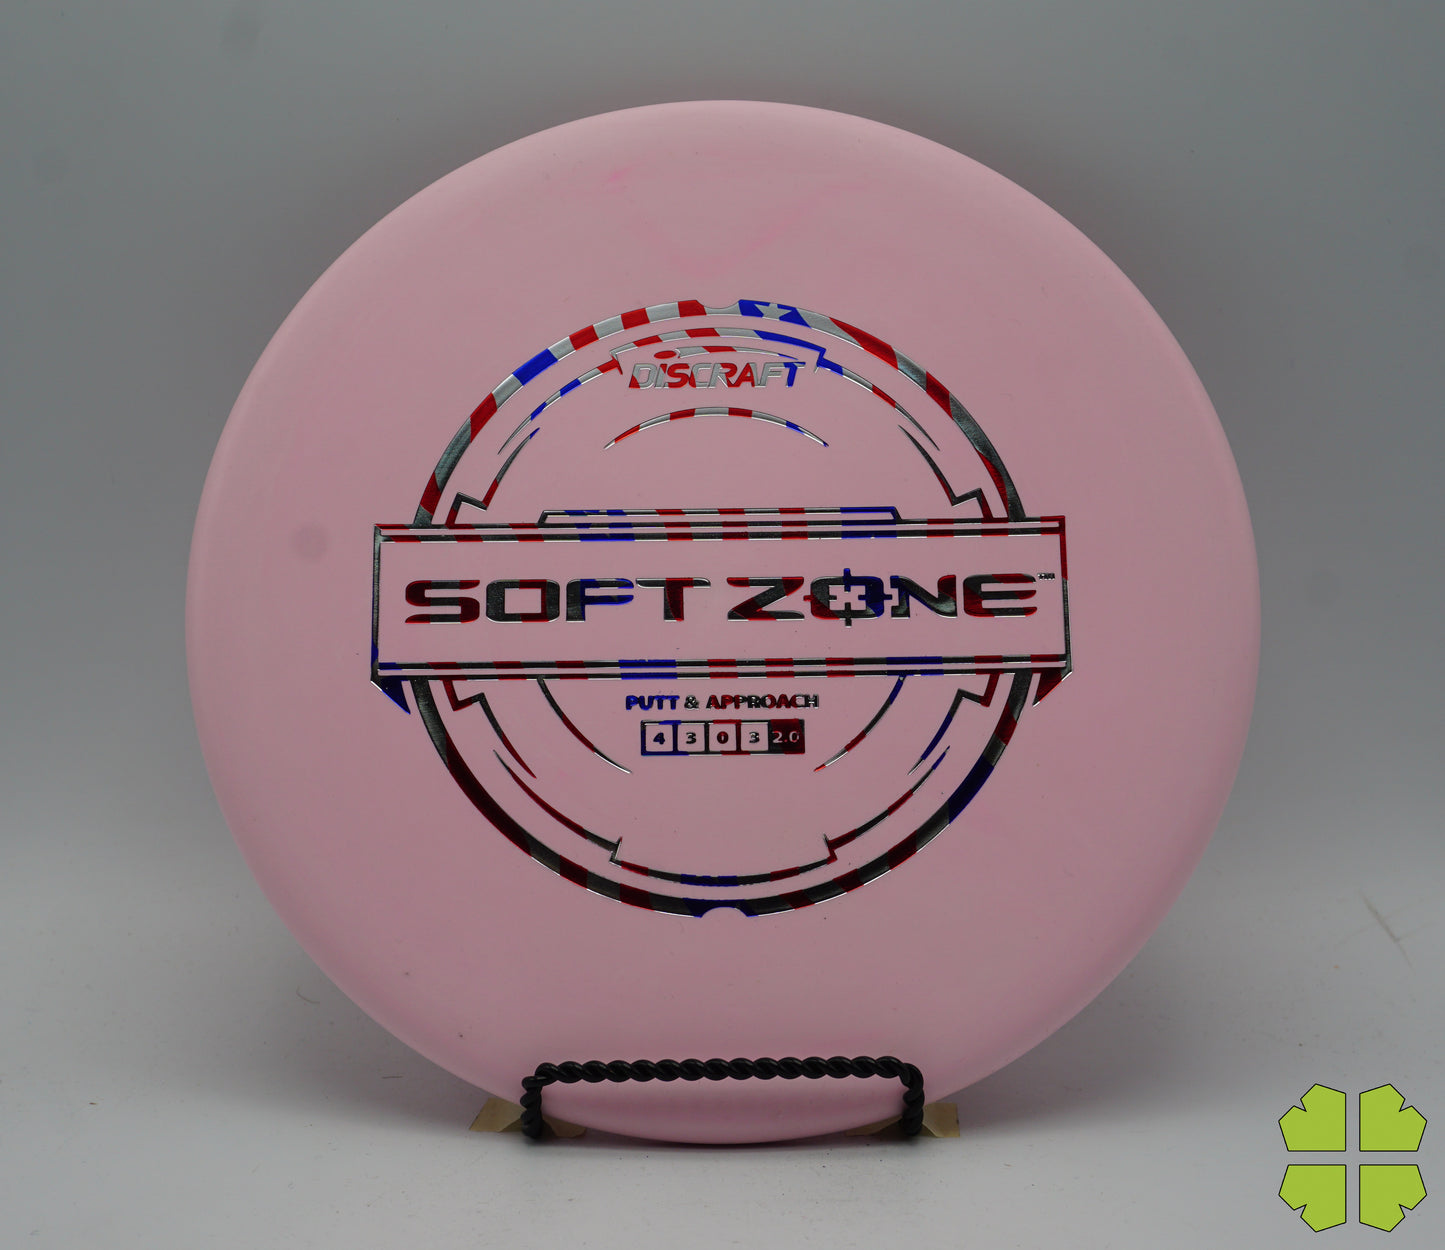 Soft Zone